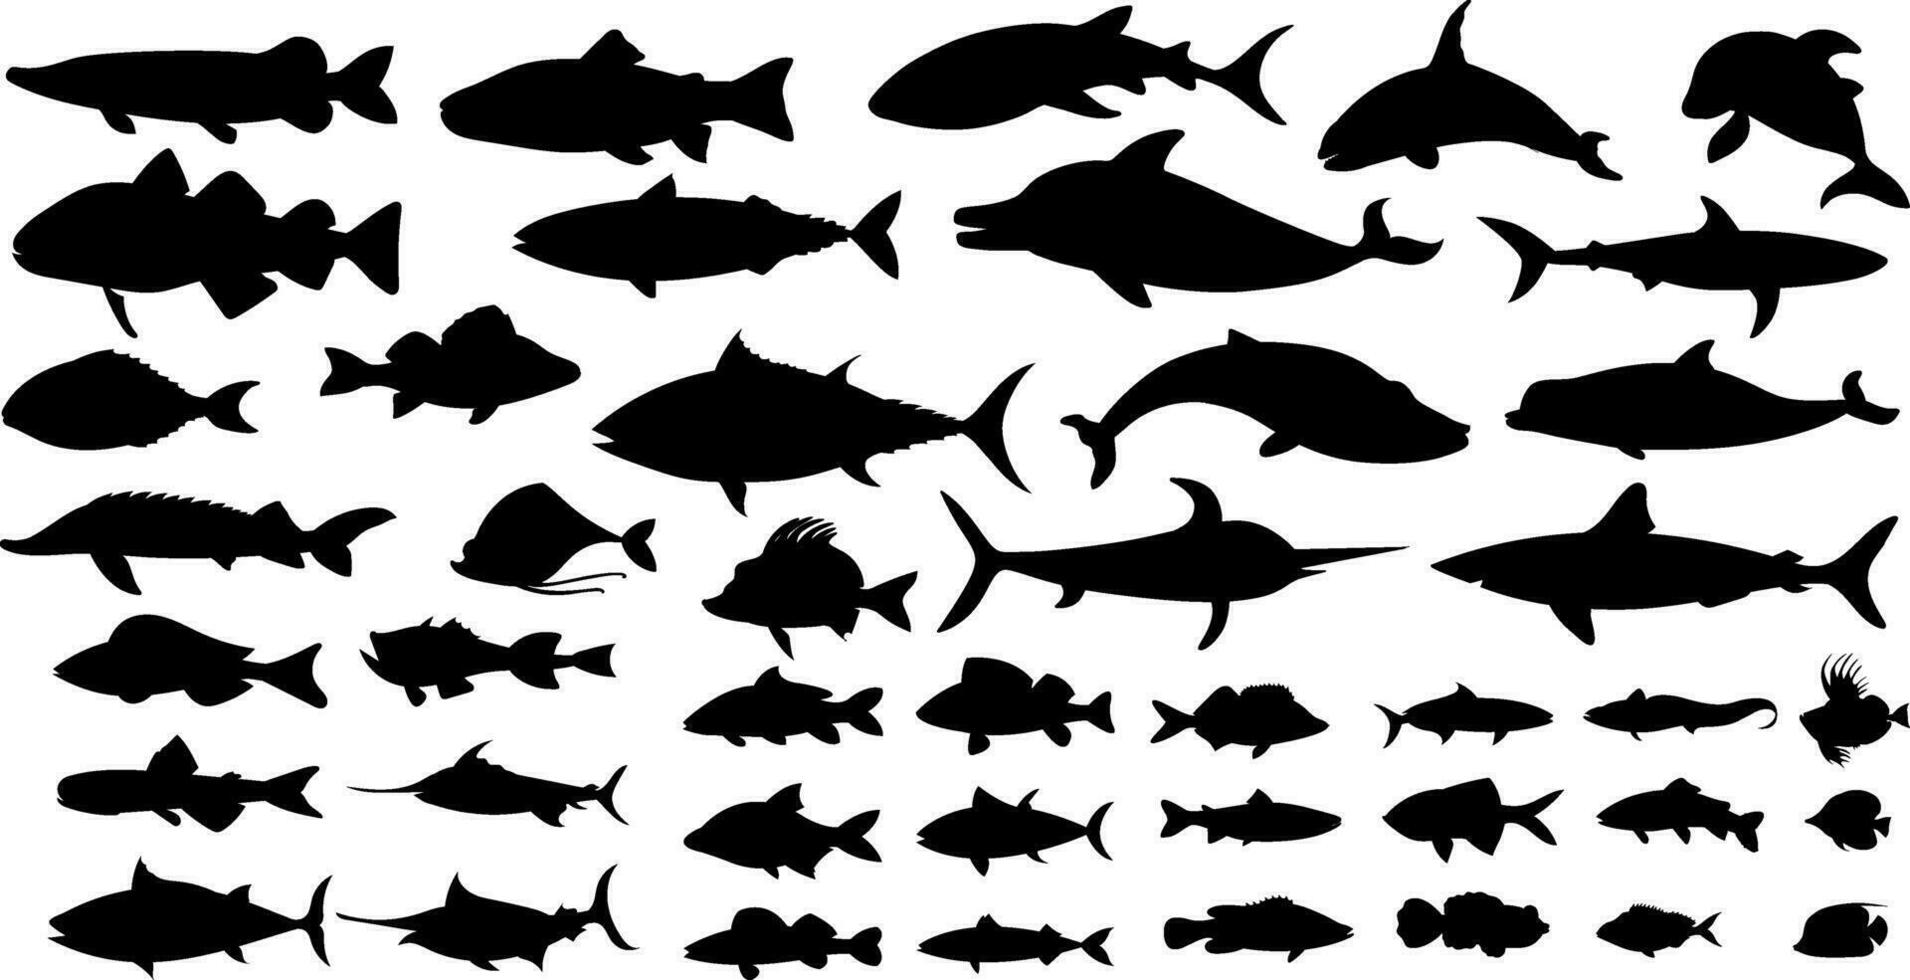 groot verzameling van zoetwater vis silhouetten. geïsoleerd vector illustraties